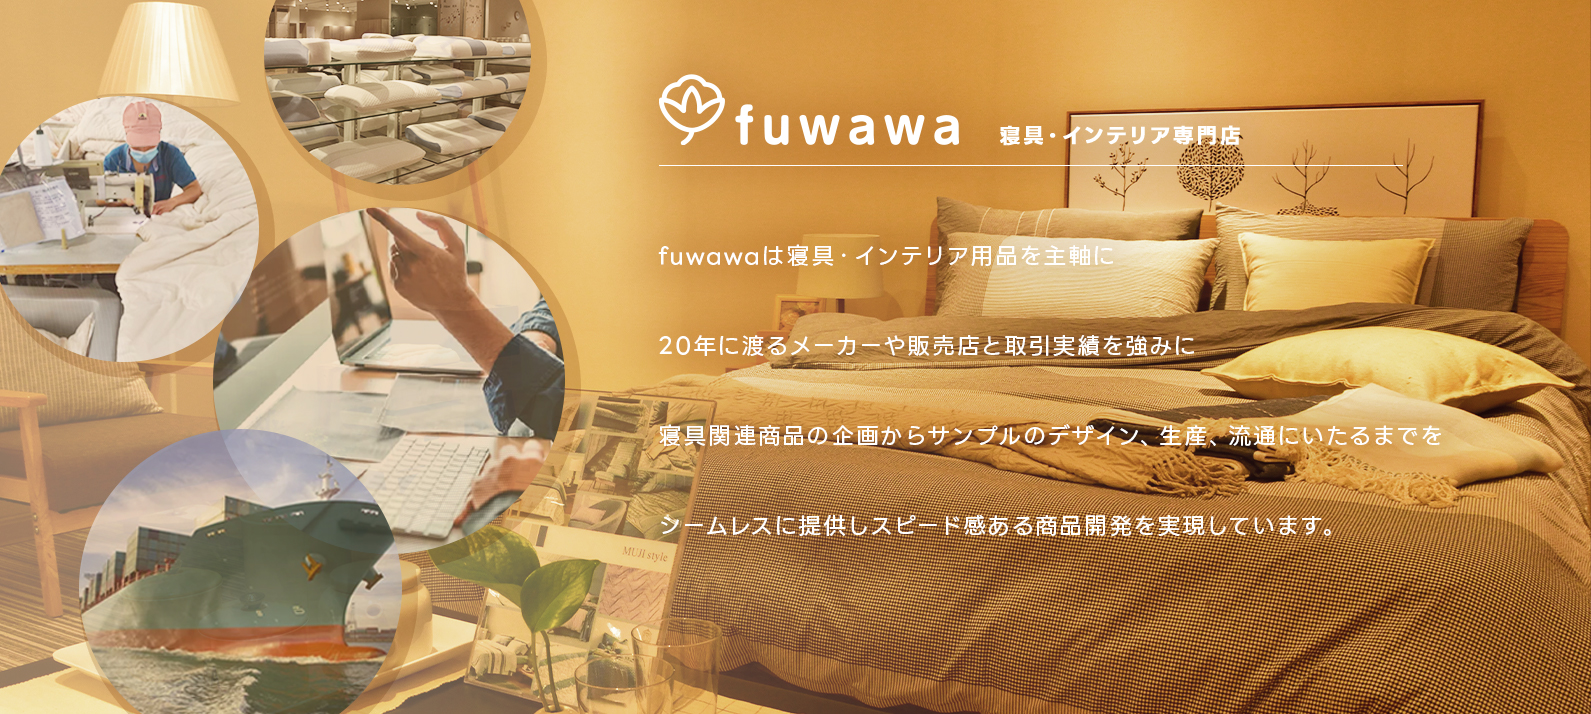 fuwawaの概要